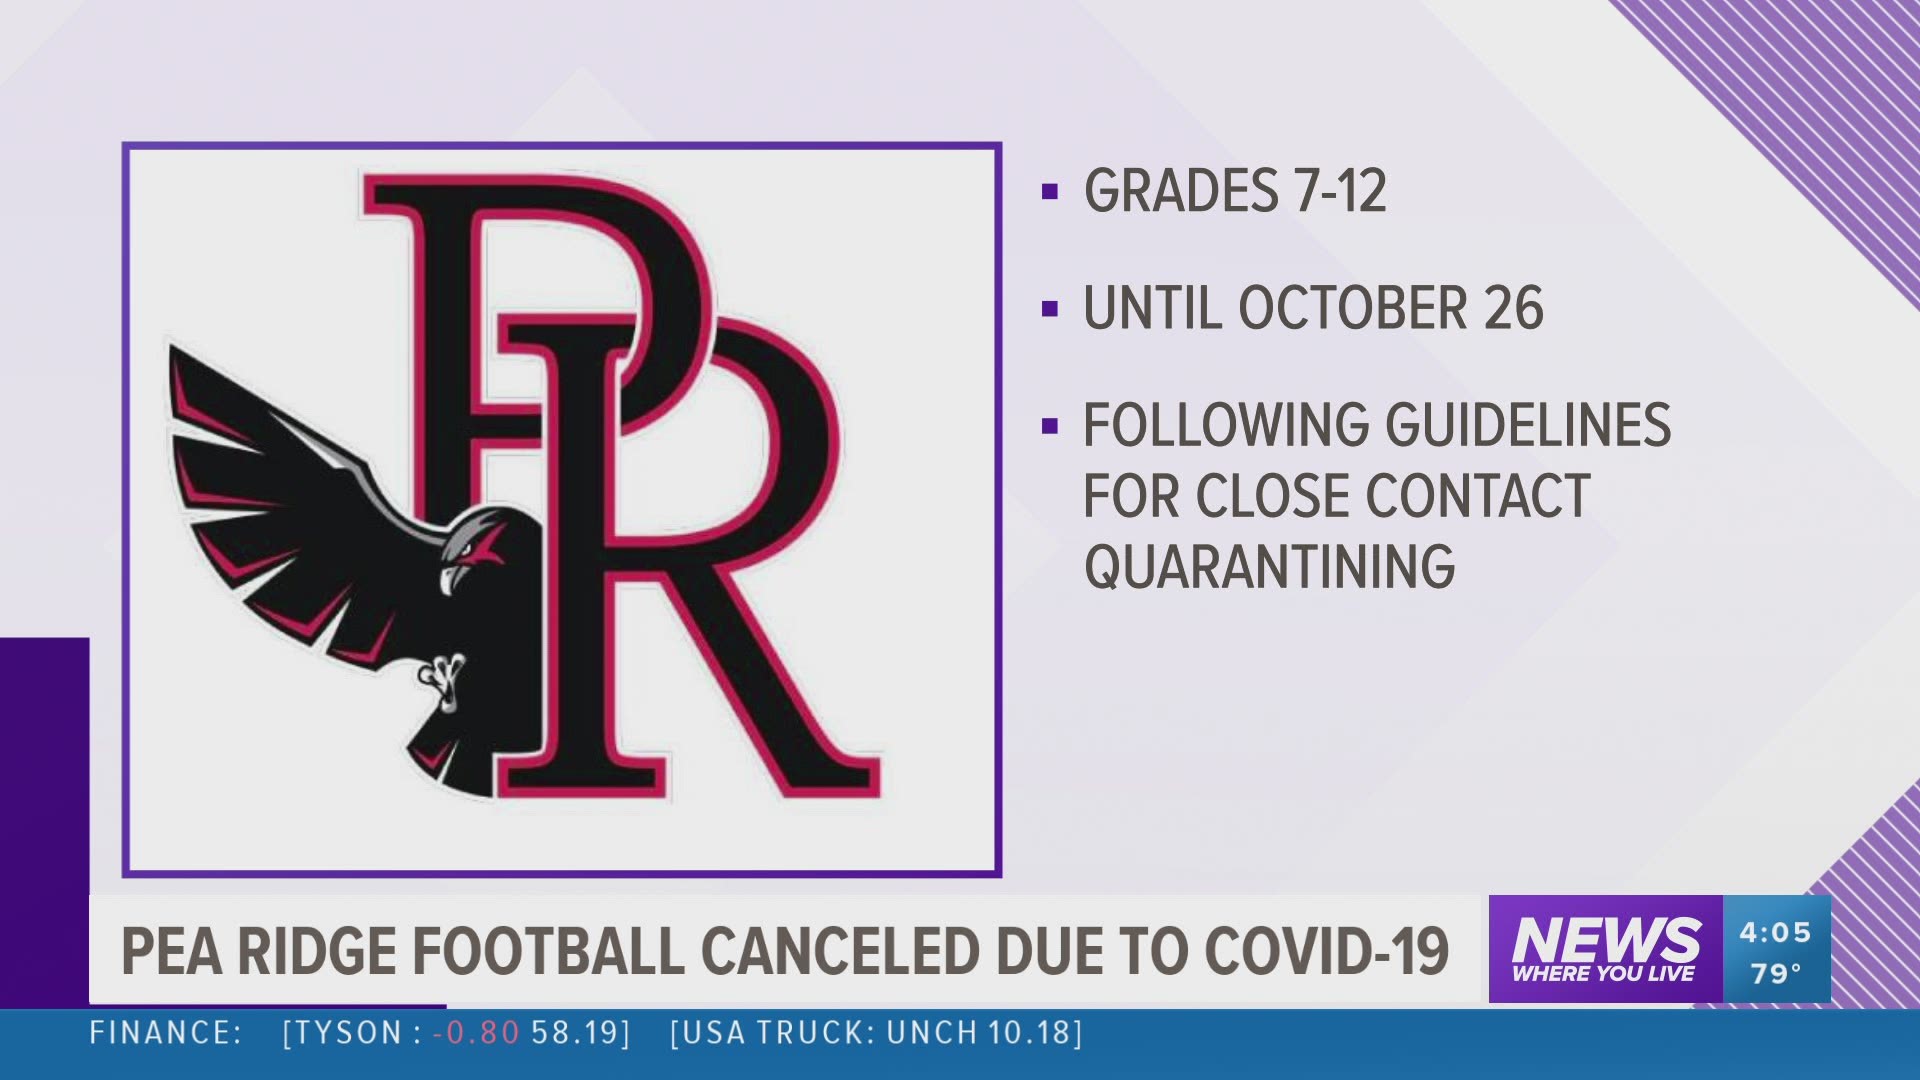 Pea Ridge Football cancelled due to COVID-19